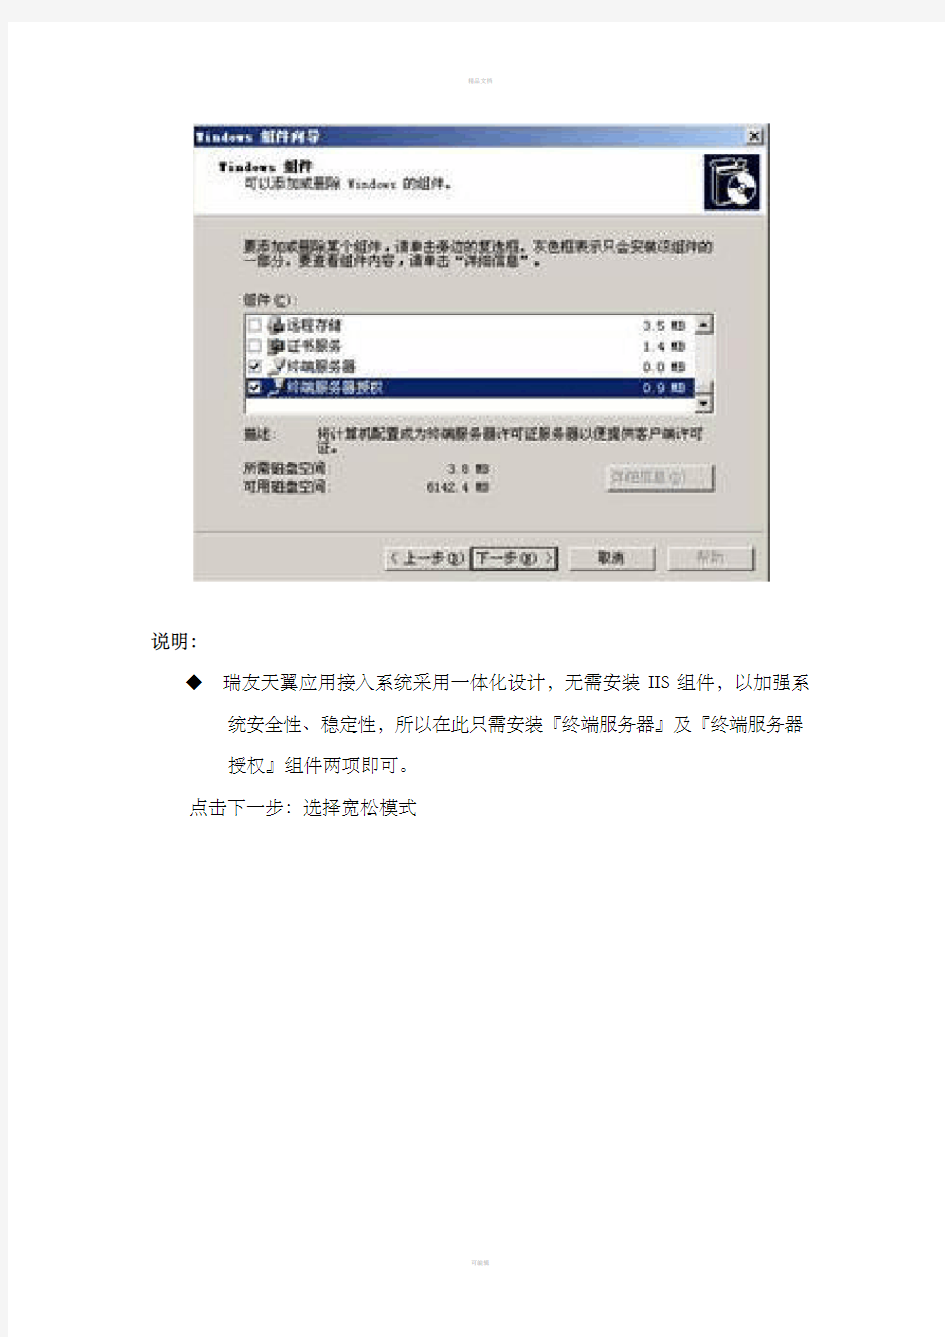 瑞友天冀远程接入43版安装配置指导手册